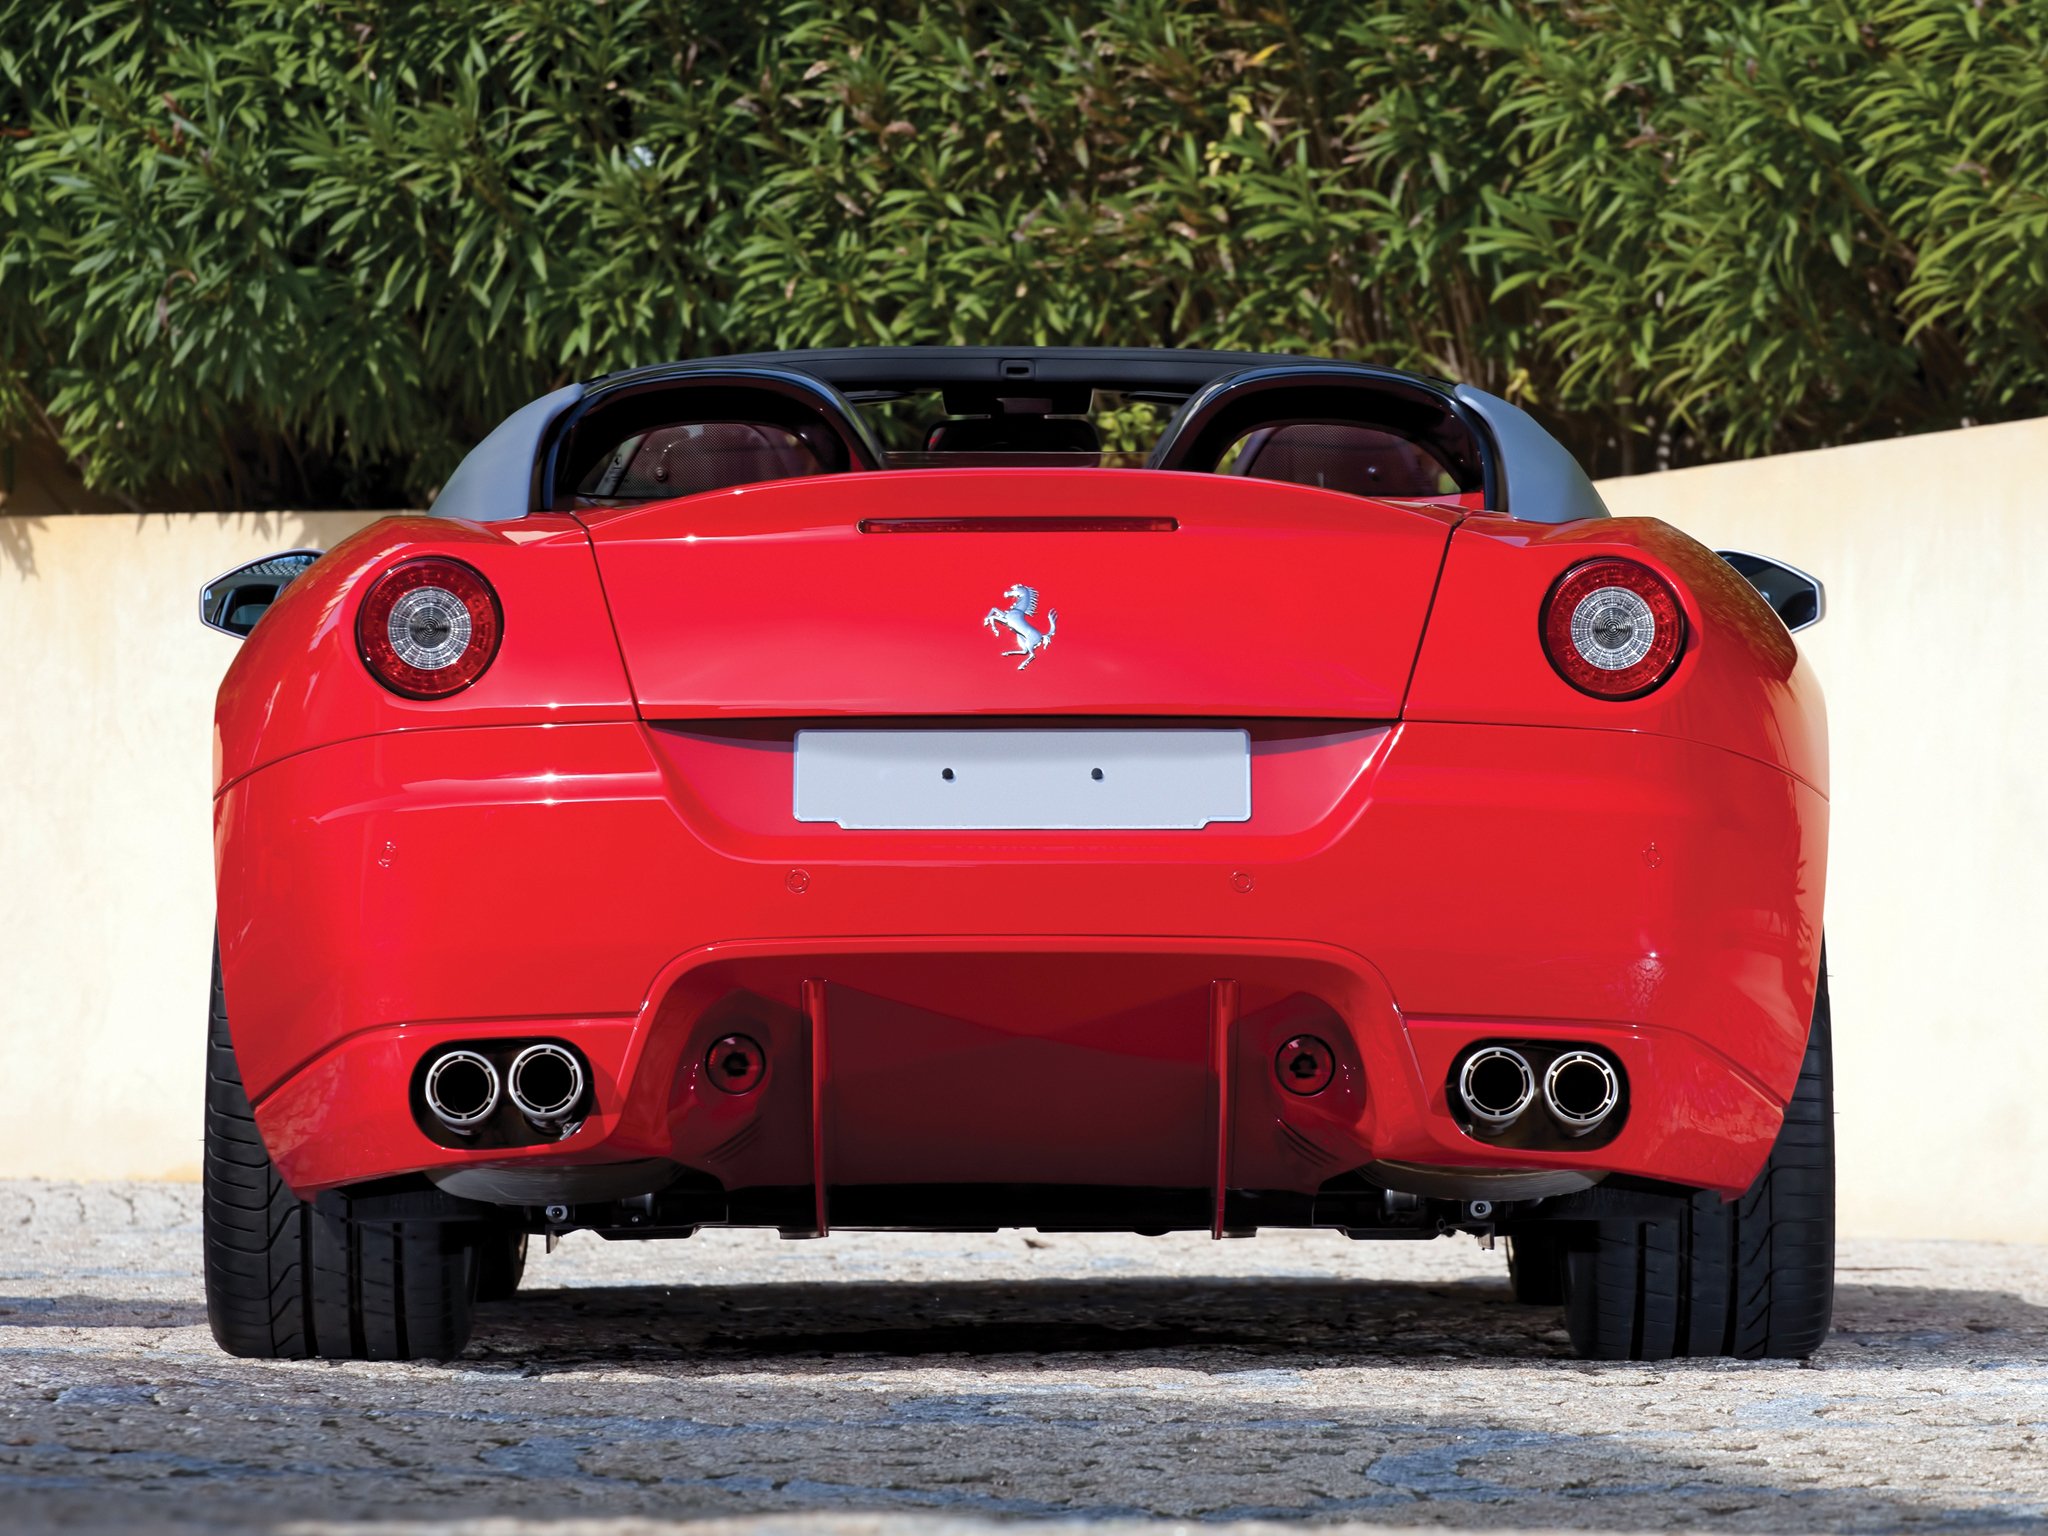 2010, Ferrari, S a, Aperta, Pininfarina, Supercar Wallpaper